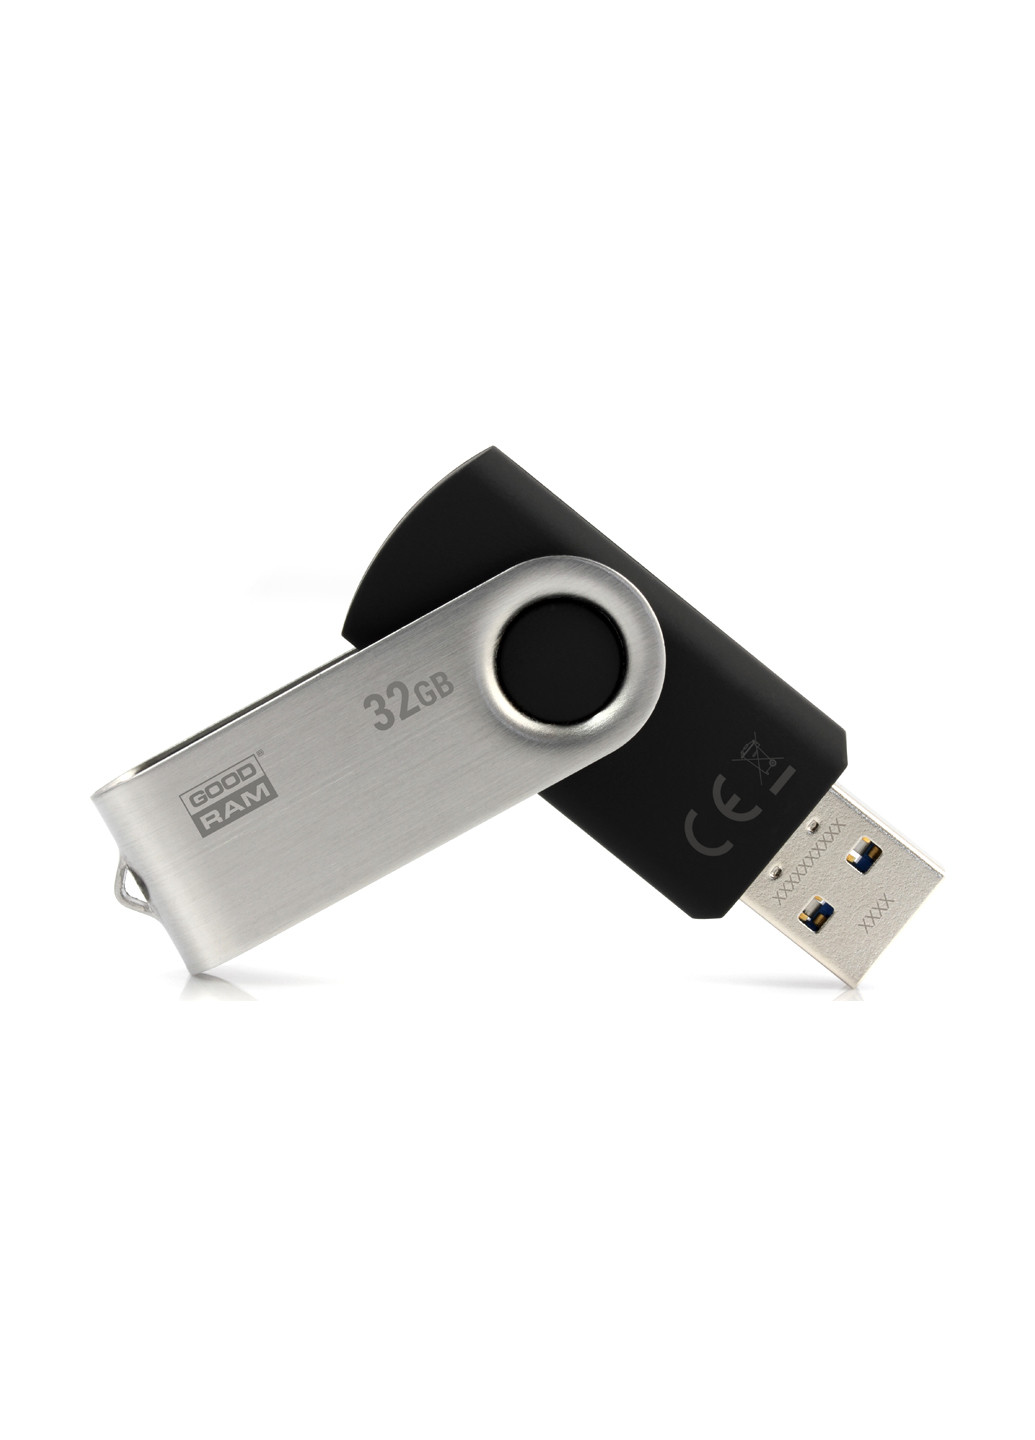 Флеш пам'ять USB UTS3 32GB USB 3.0 Black (UTS3-0320K0R11) Goodram флеш память usb goodram uts3 32gb usb 3.0 black (uts3-0320k0r11) (135165441)